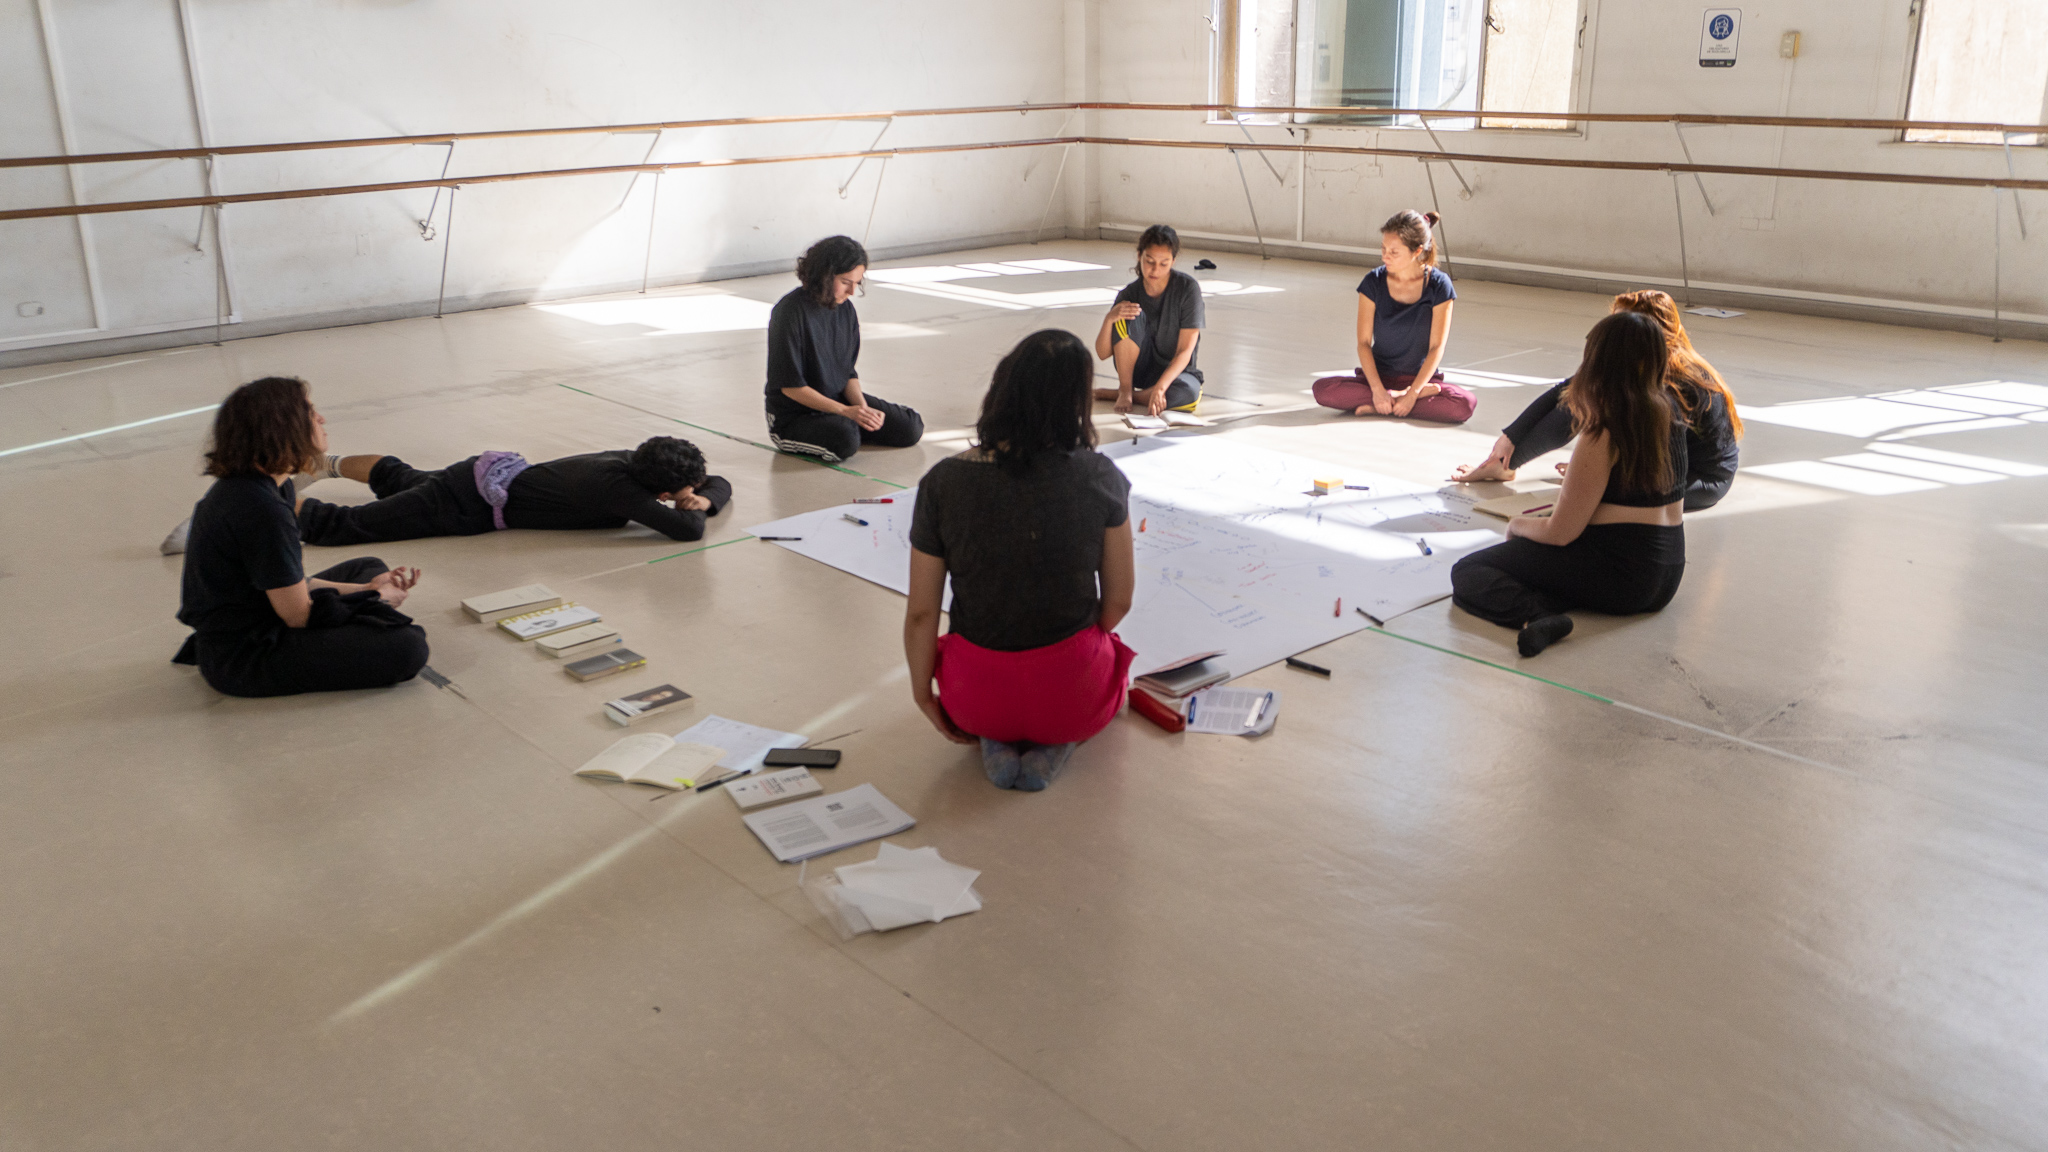  La Casa de Bello convoca a espacios gratuitos de formación y reflexión en torno a la danza